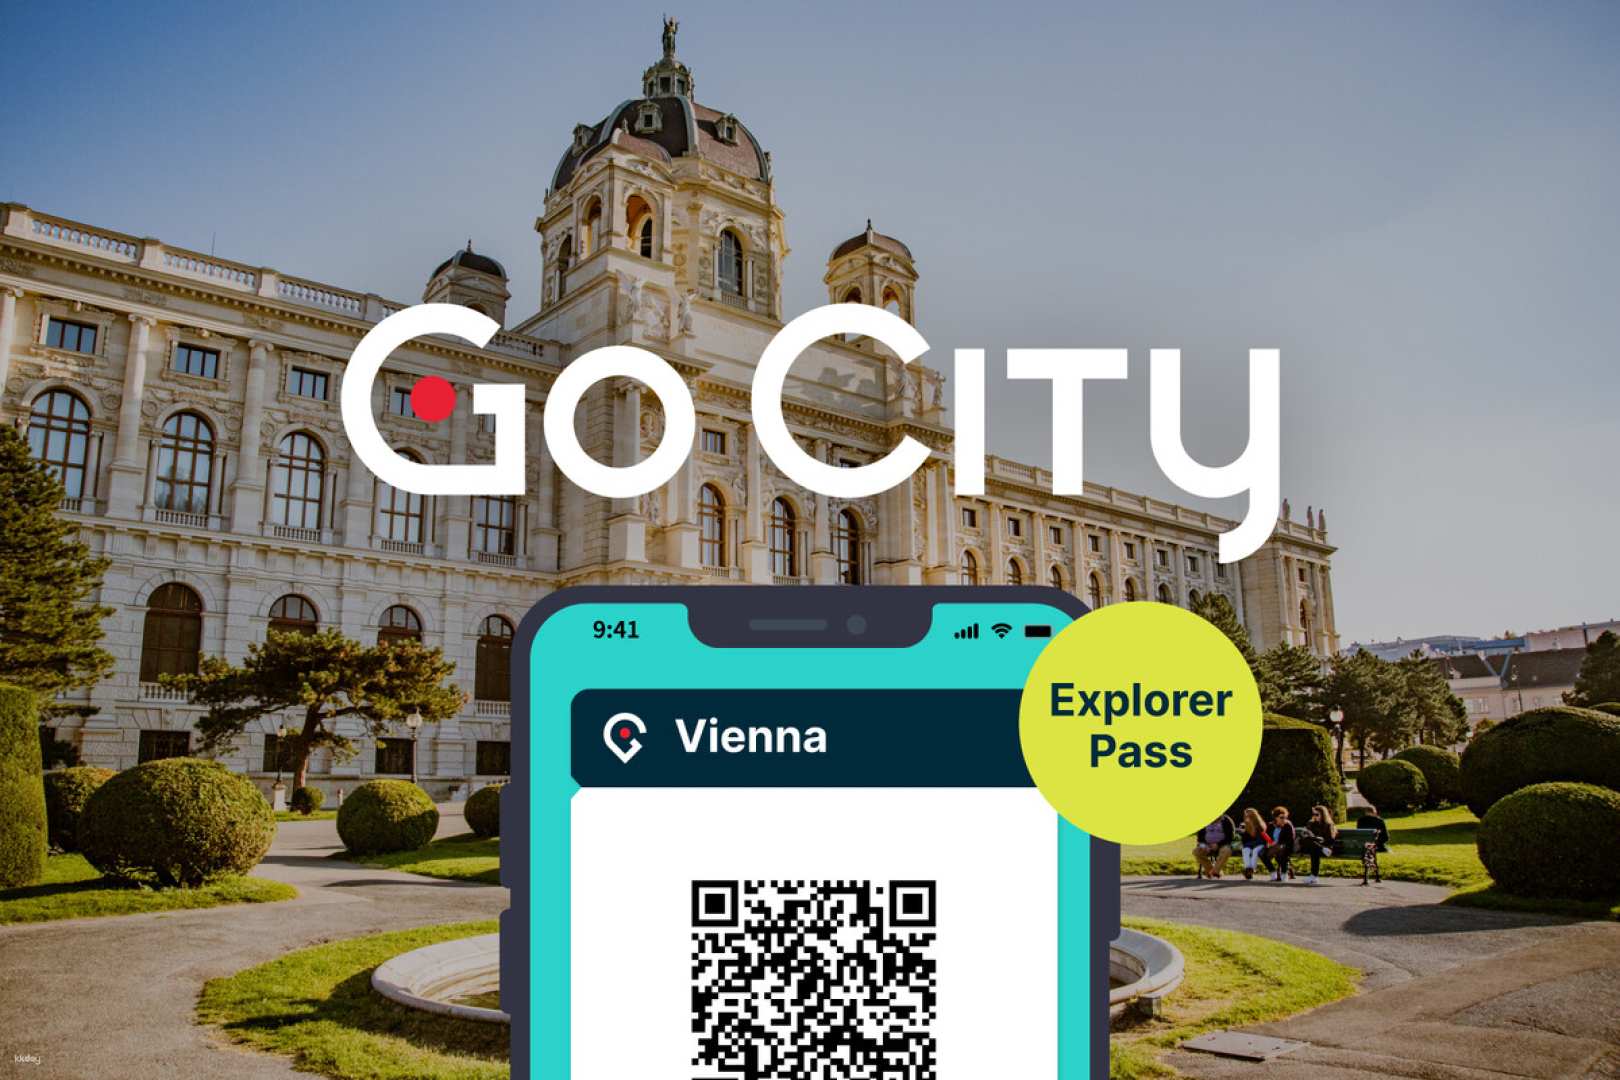 奧地利-維也納探索者通行證 Vienna Explorer Pass| 任選維也納必去景點